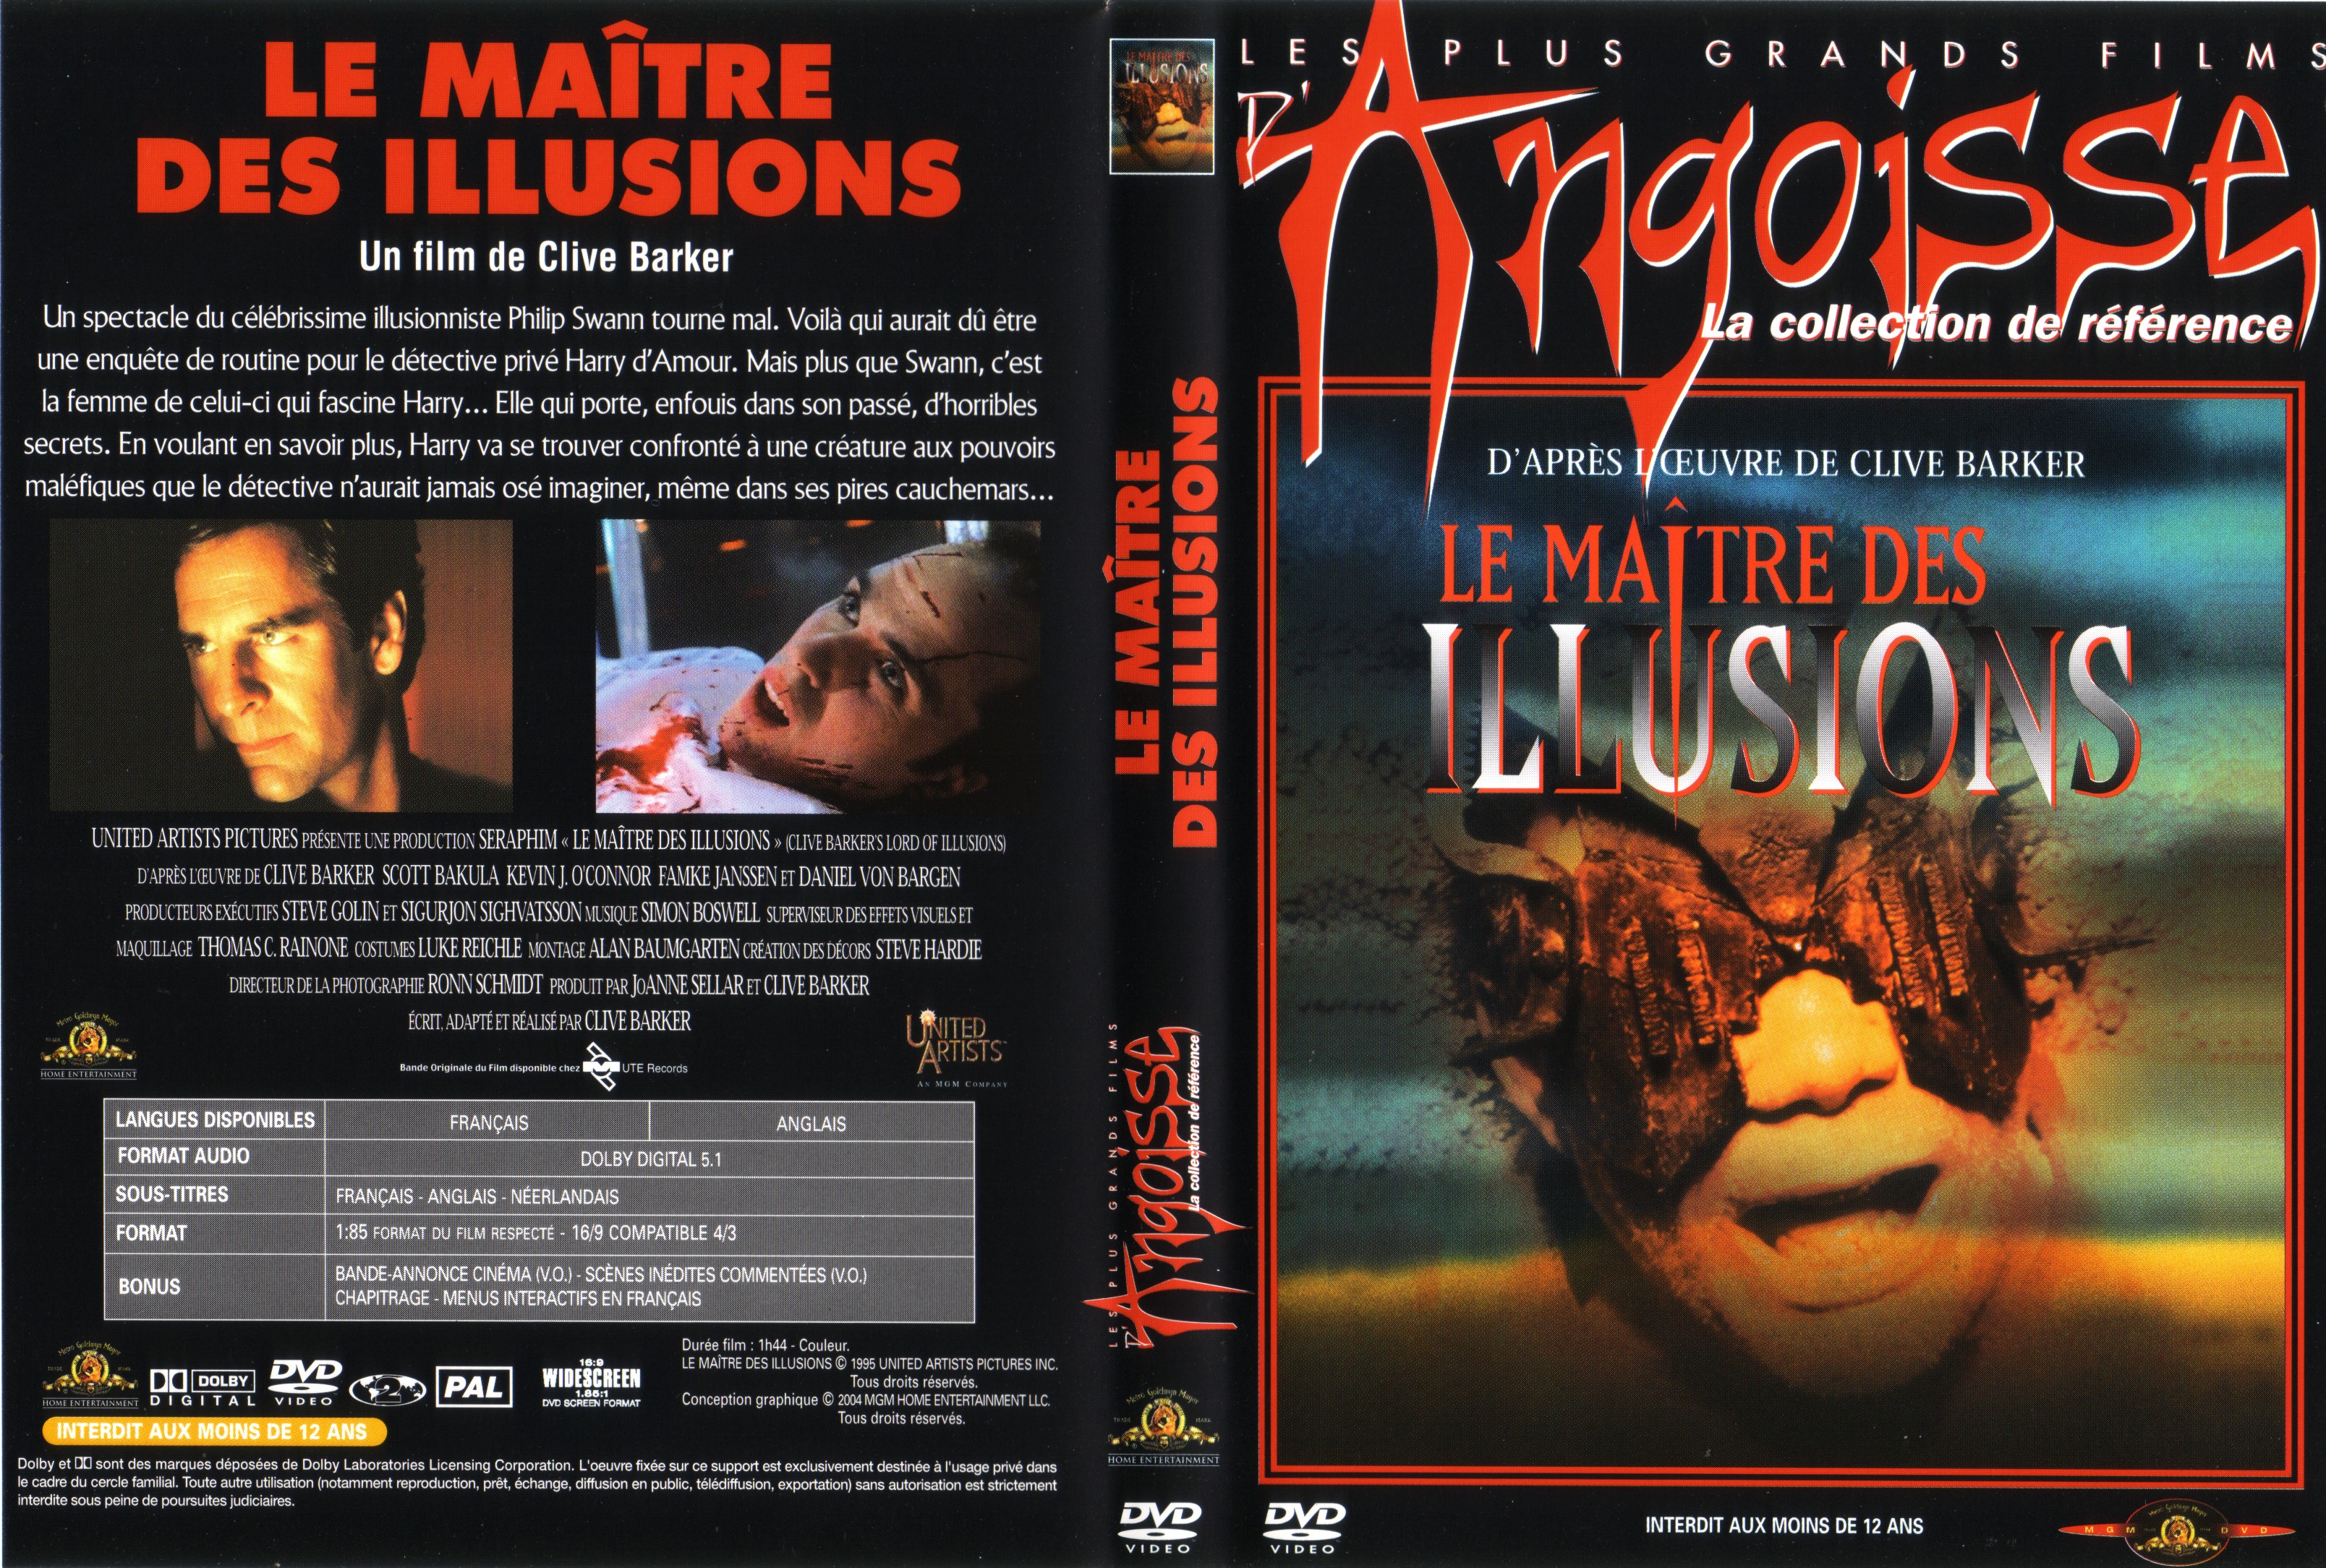 Jaquette DVD de Le maitre des illusions v2 - Cinéma Passion